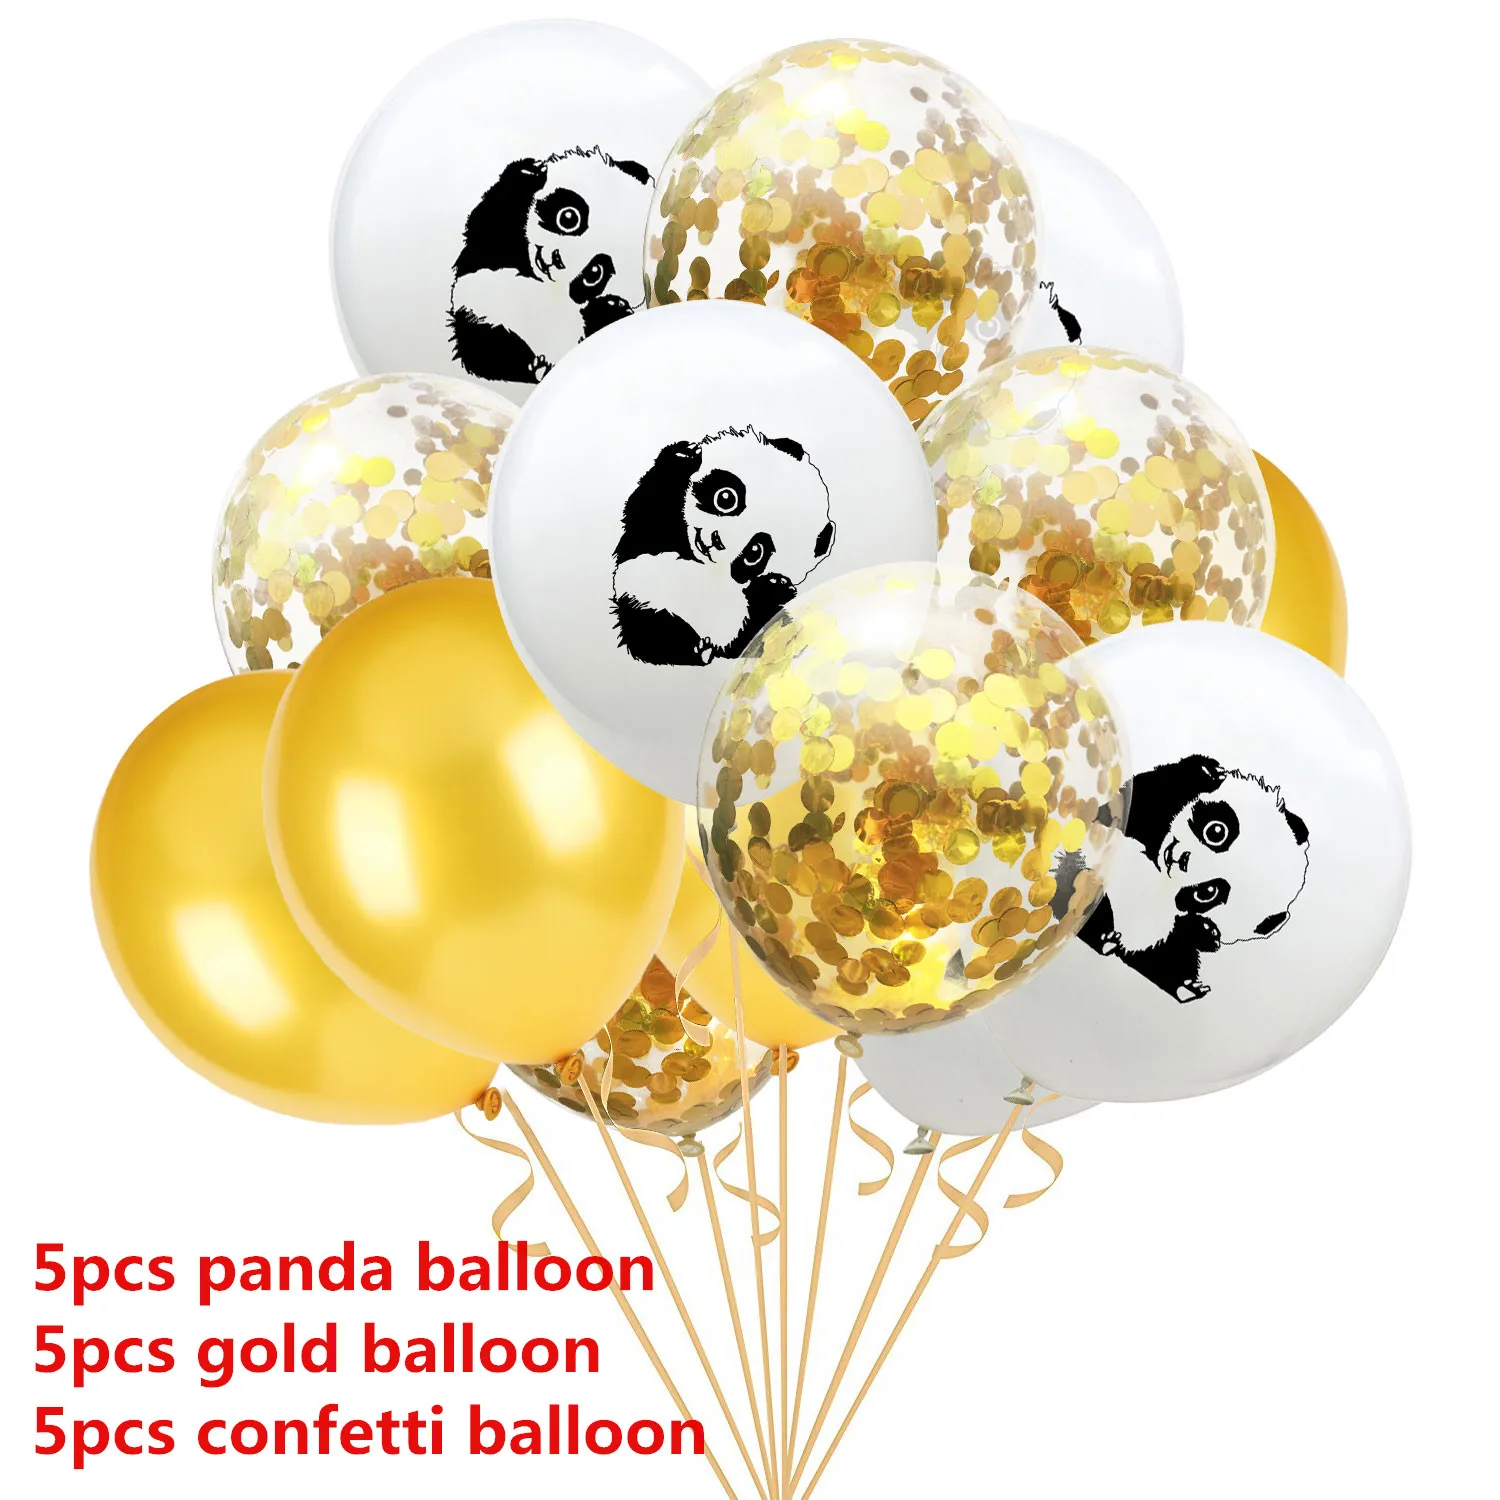 Amawill 23 шт./компл. панда День рождения поставки с днем рождения черный баннер шарики с рисунком панды на день рождения украшения для детей 7D - Цвет: panda confetti